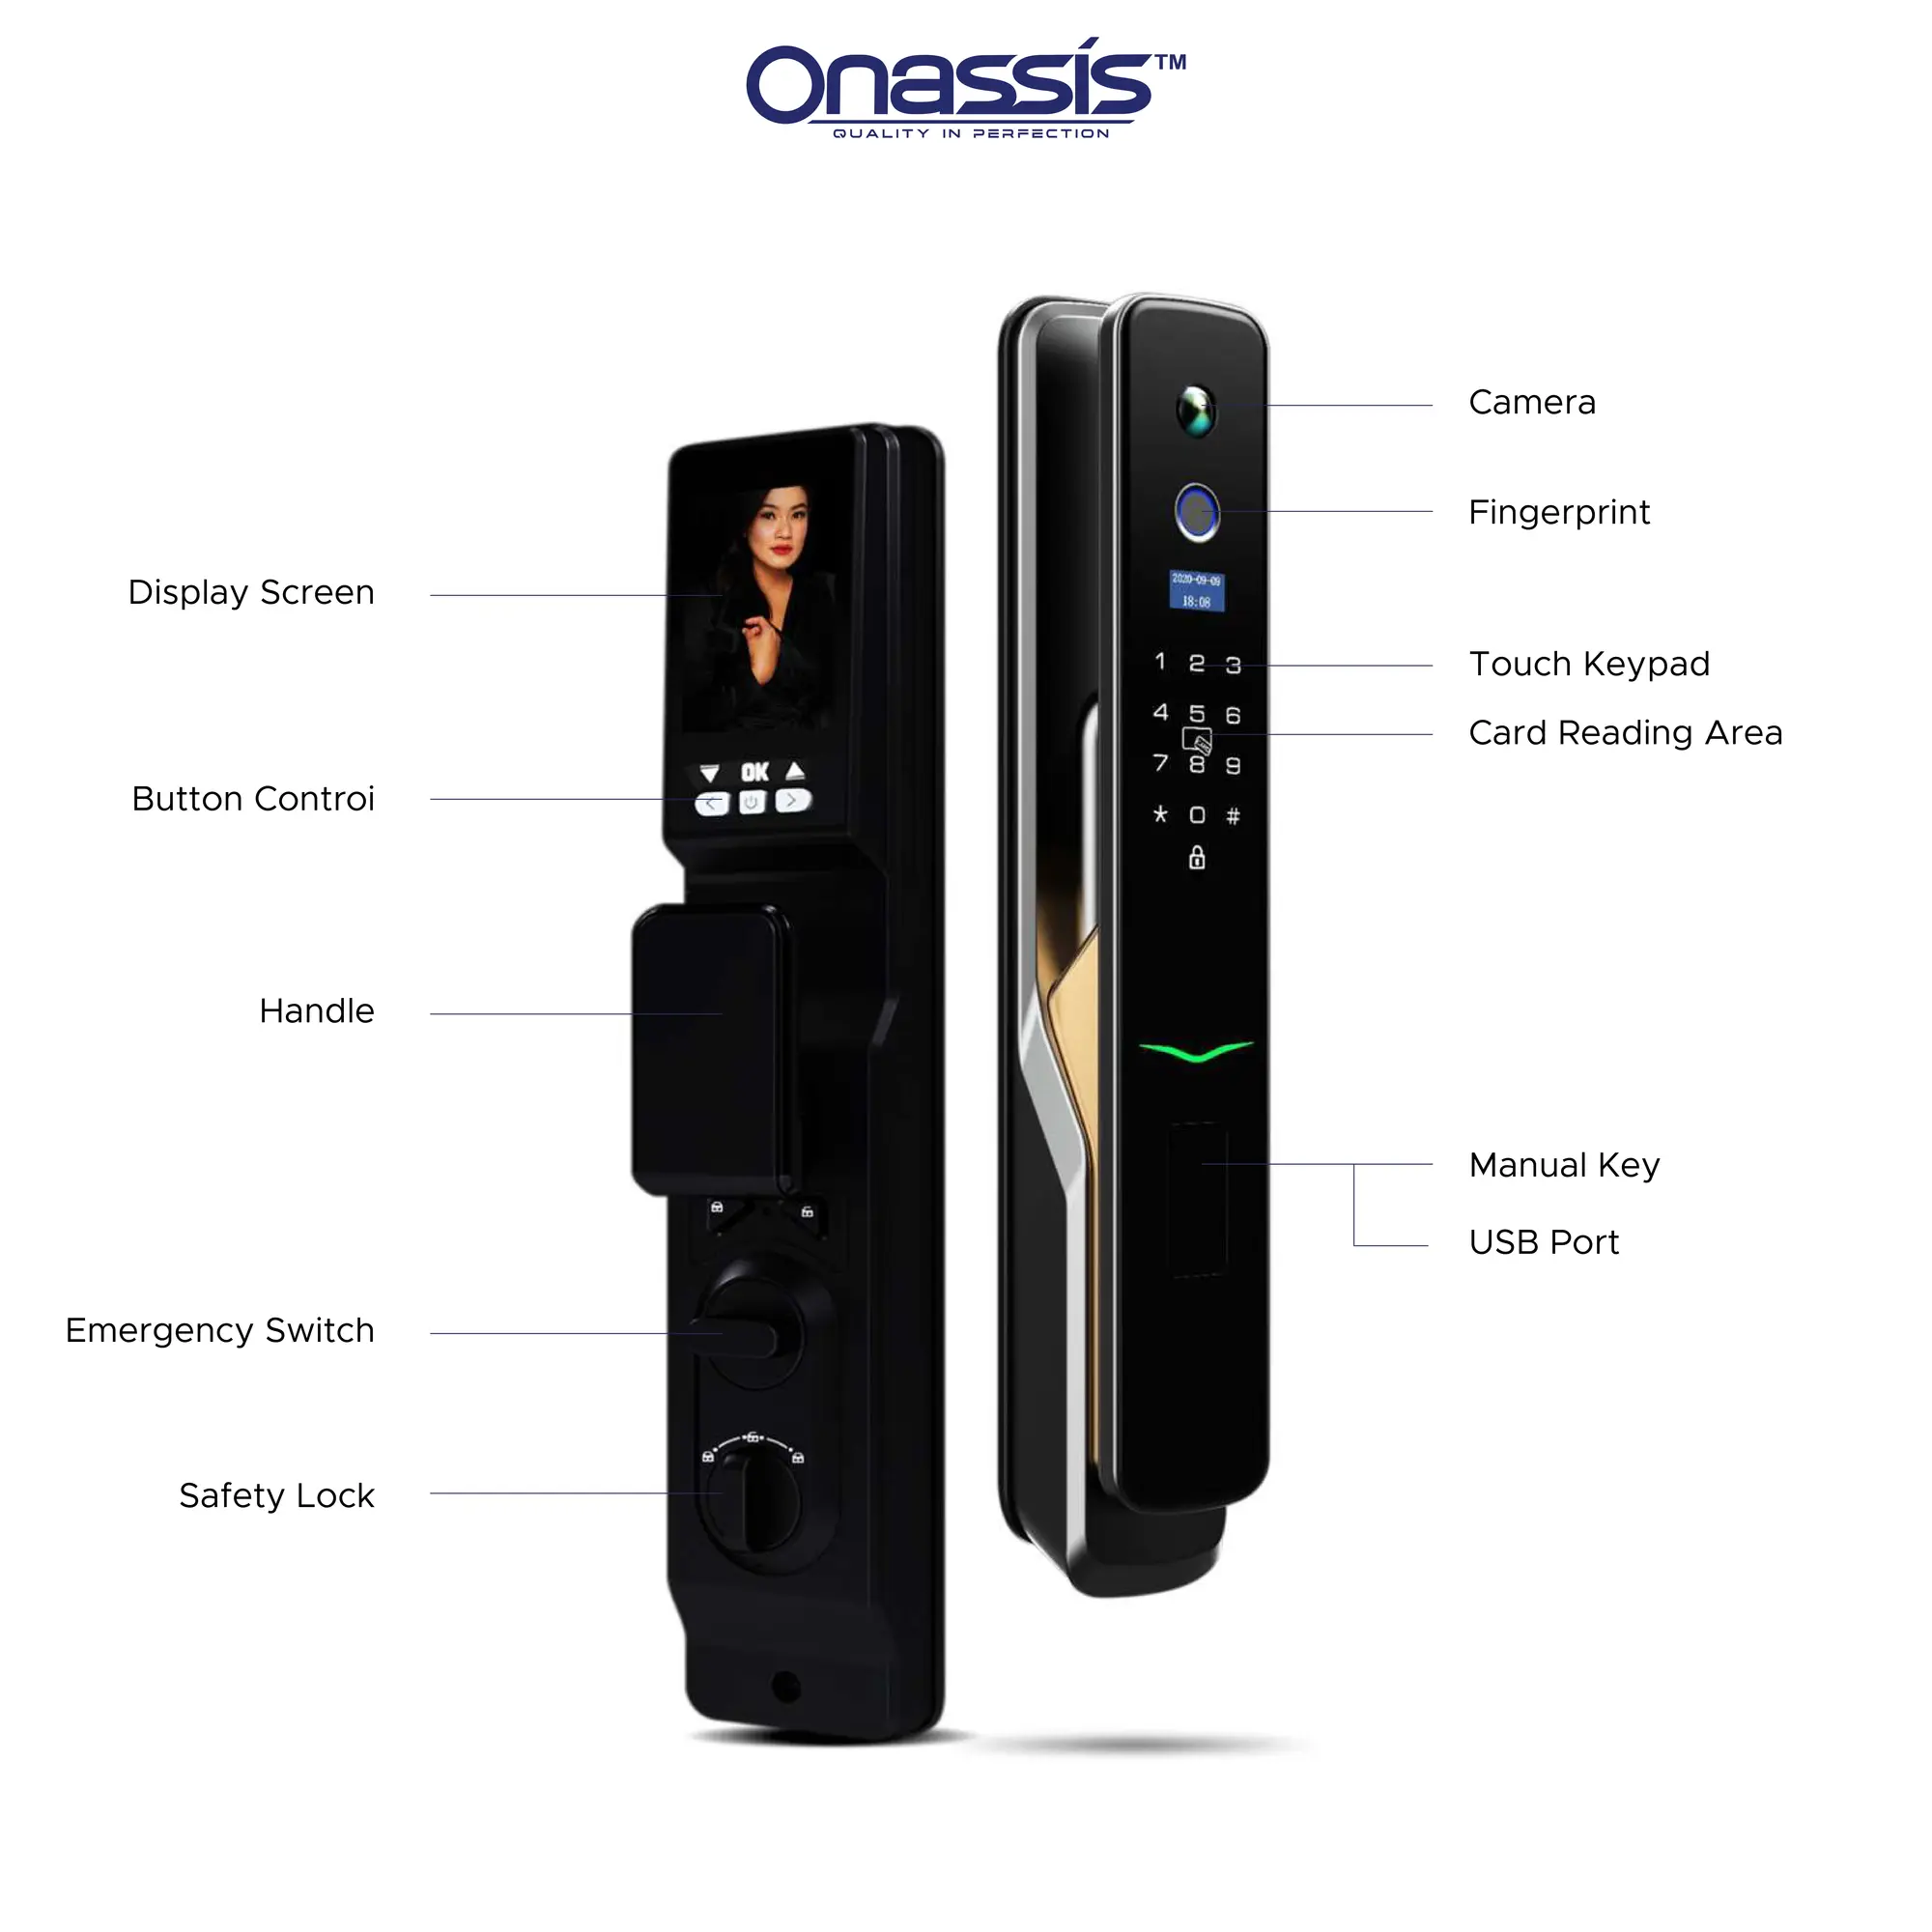 Smartlock Onassis K10 Pro Features